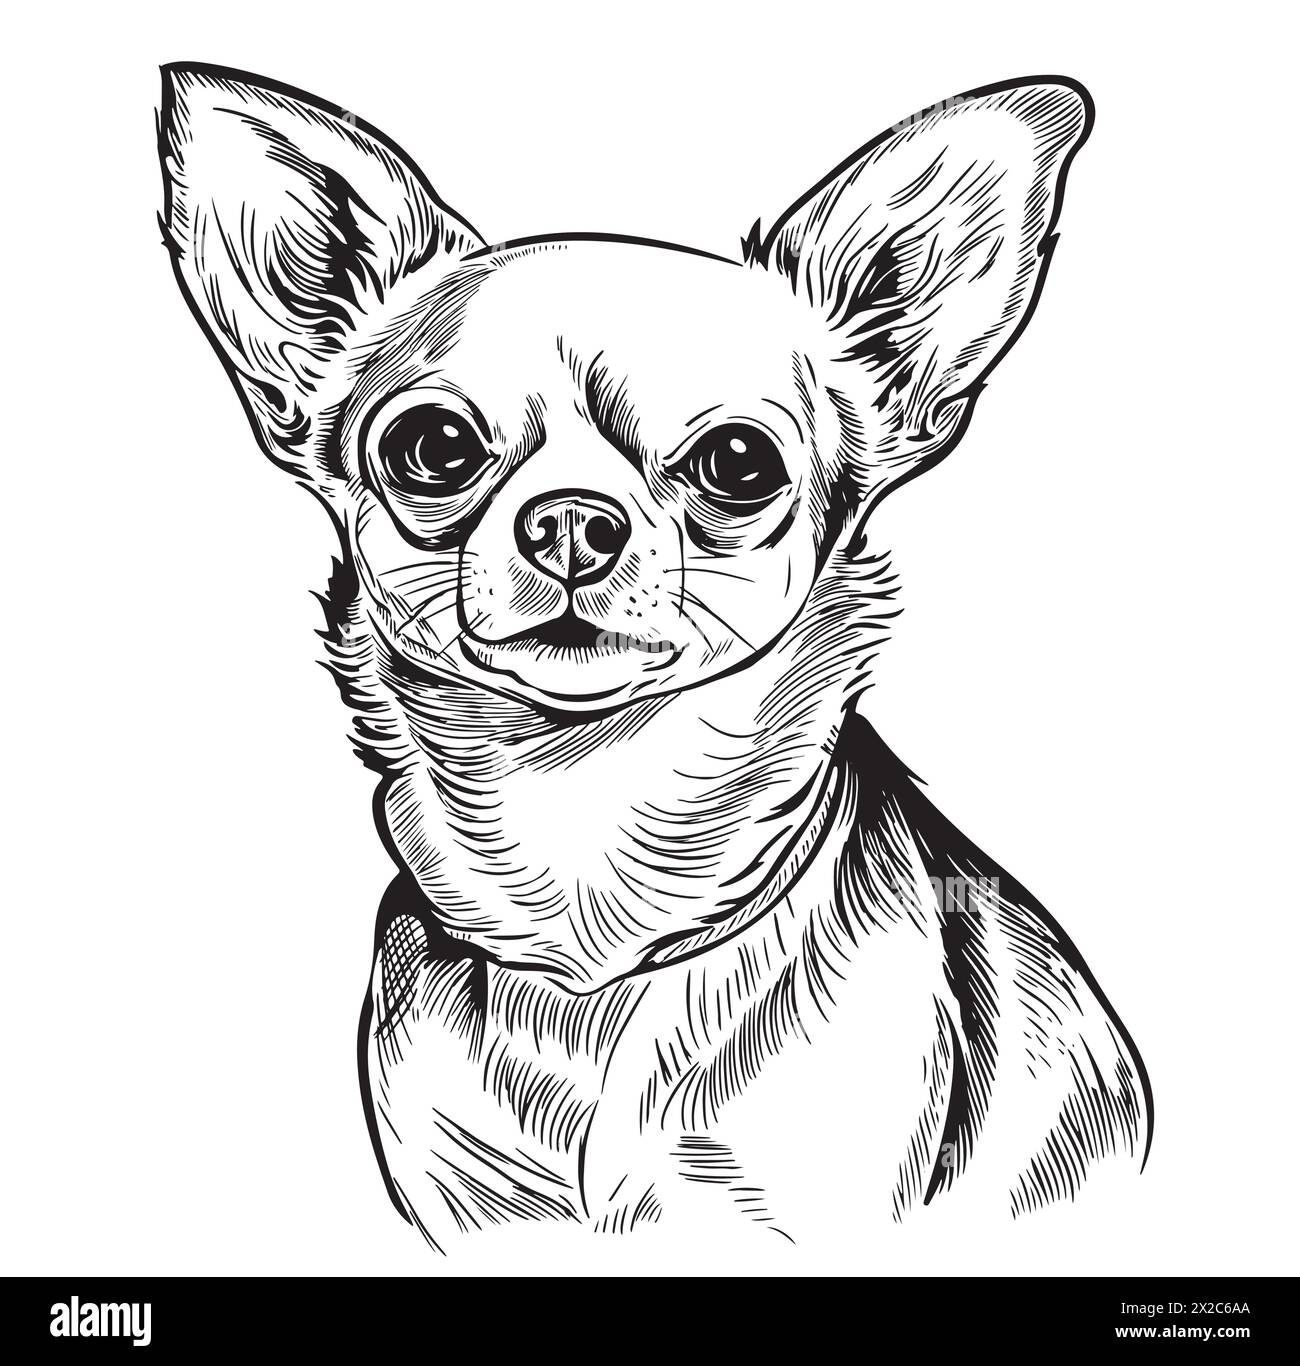 Ein lächelnder chihuahua, eine kleine Hunderasse, dargestellt in einer schwarz-weißen Zeichnung. Dieses fleischfressende, arbeitende Tier hat Barthaare und eine süße Schnauze. Ein Compani Stock Vektor